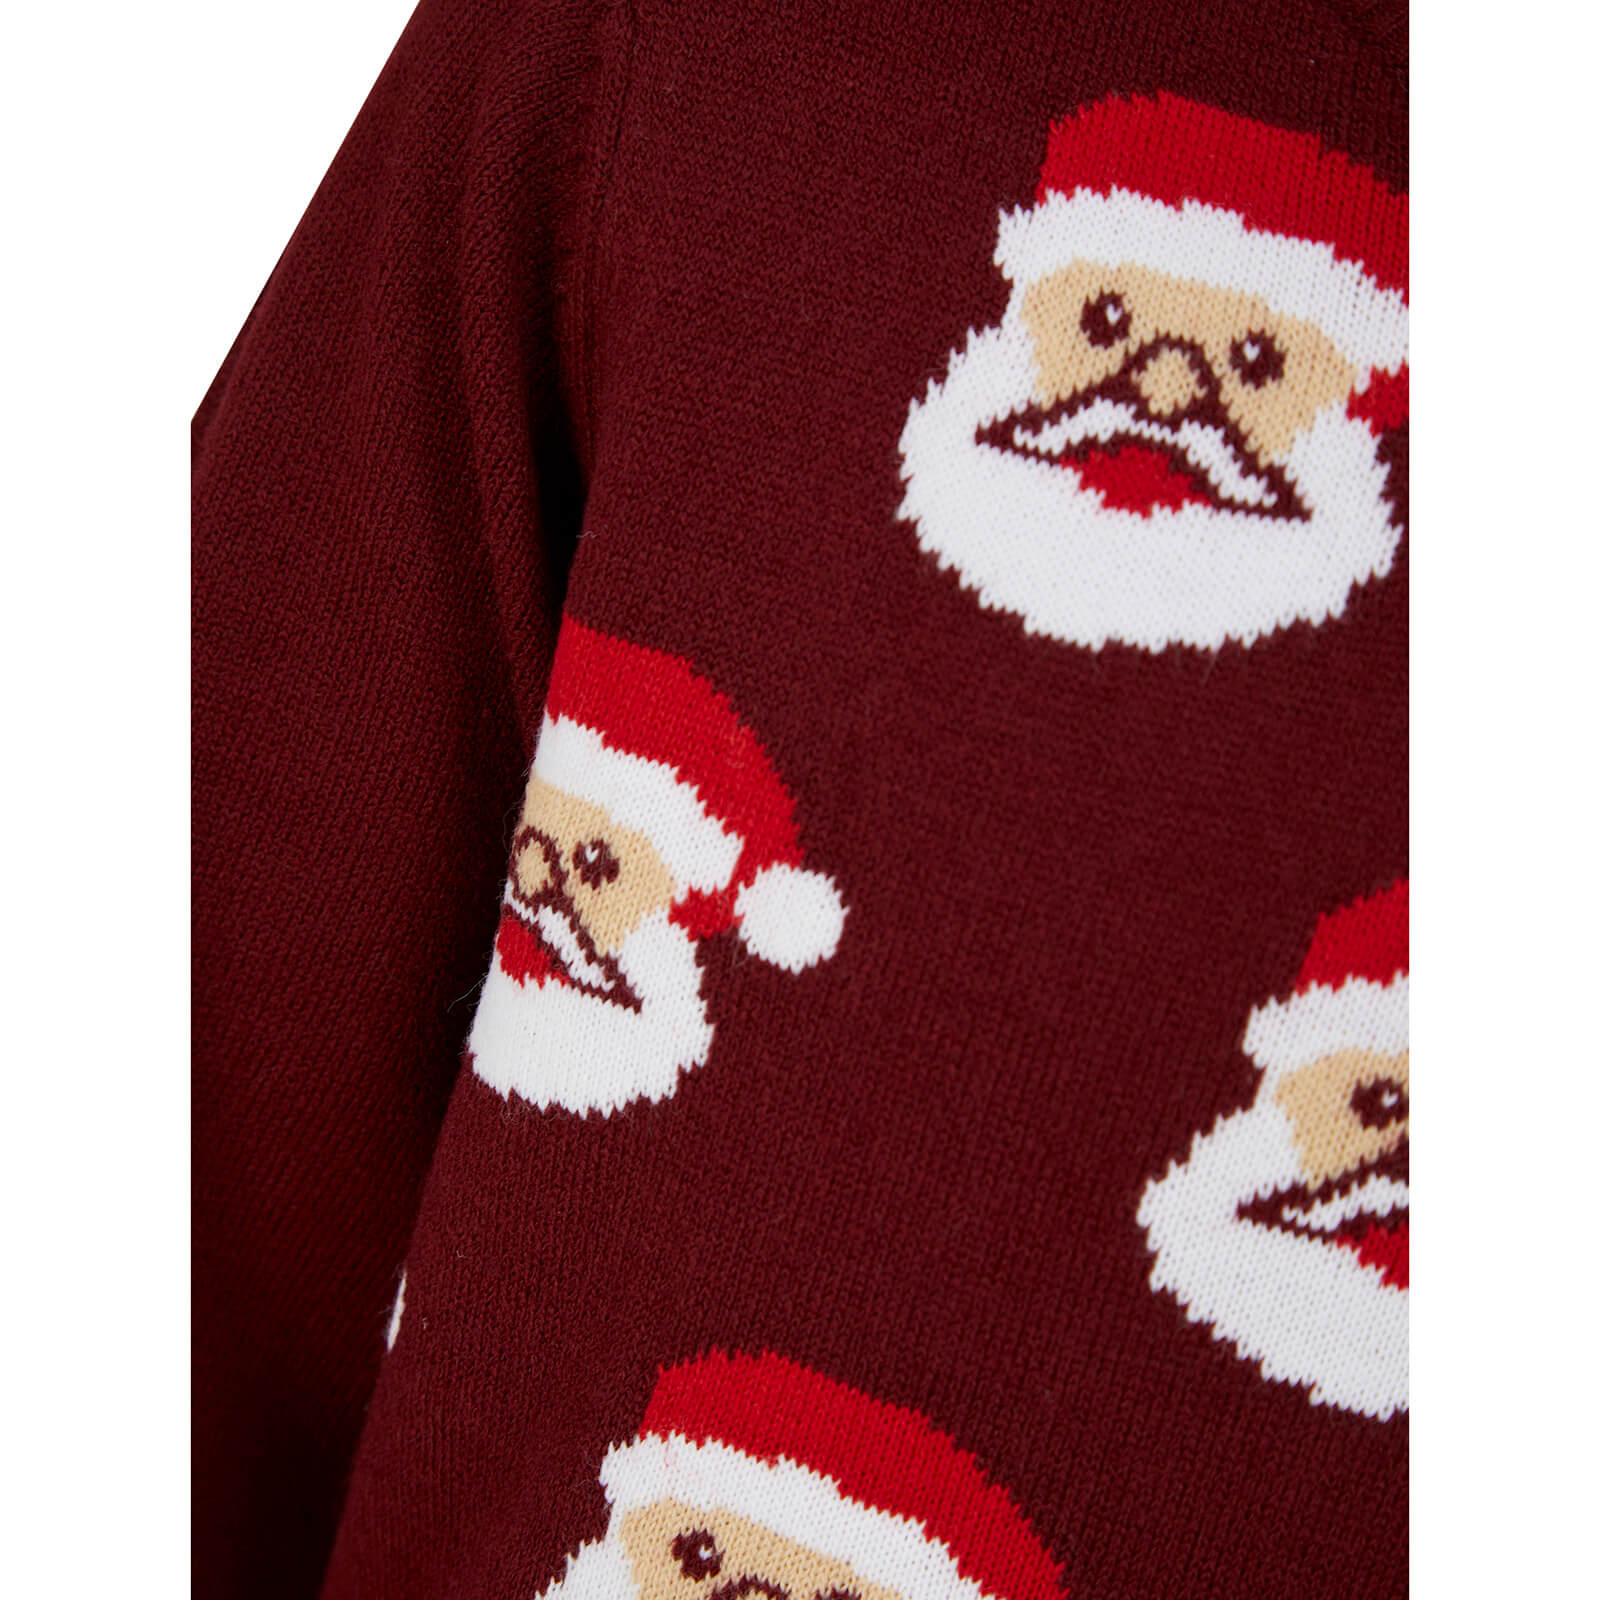 Mr Crimbo Kids Santa Claus Faces Christmas Jumper Novelty - MrCrimbo.co.uk -SRG2A17154_E - Claret Swatch -11-13 years